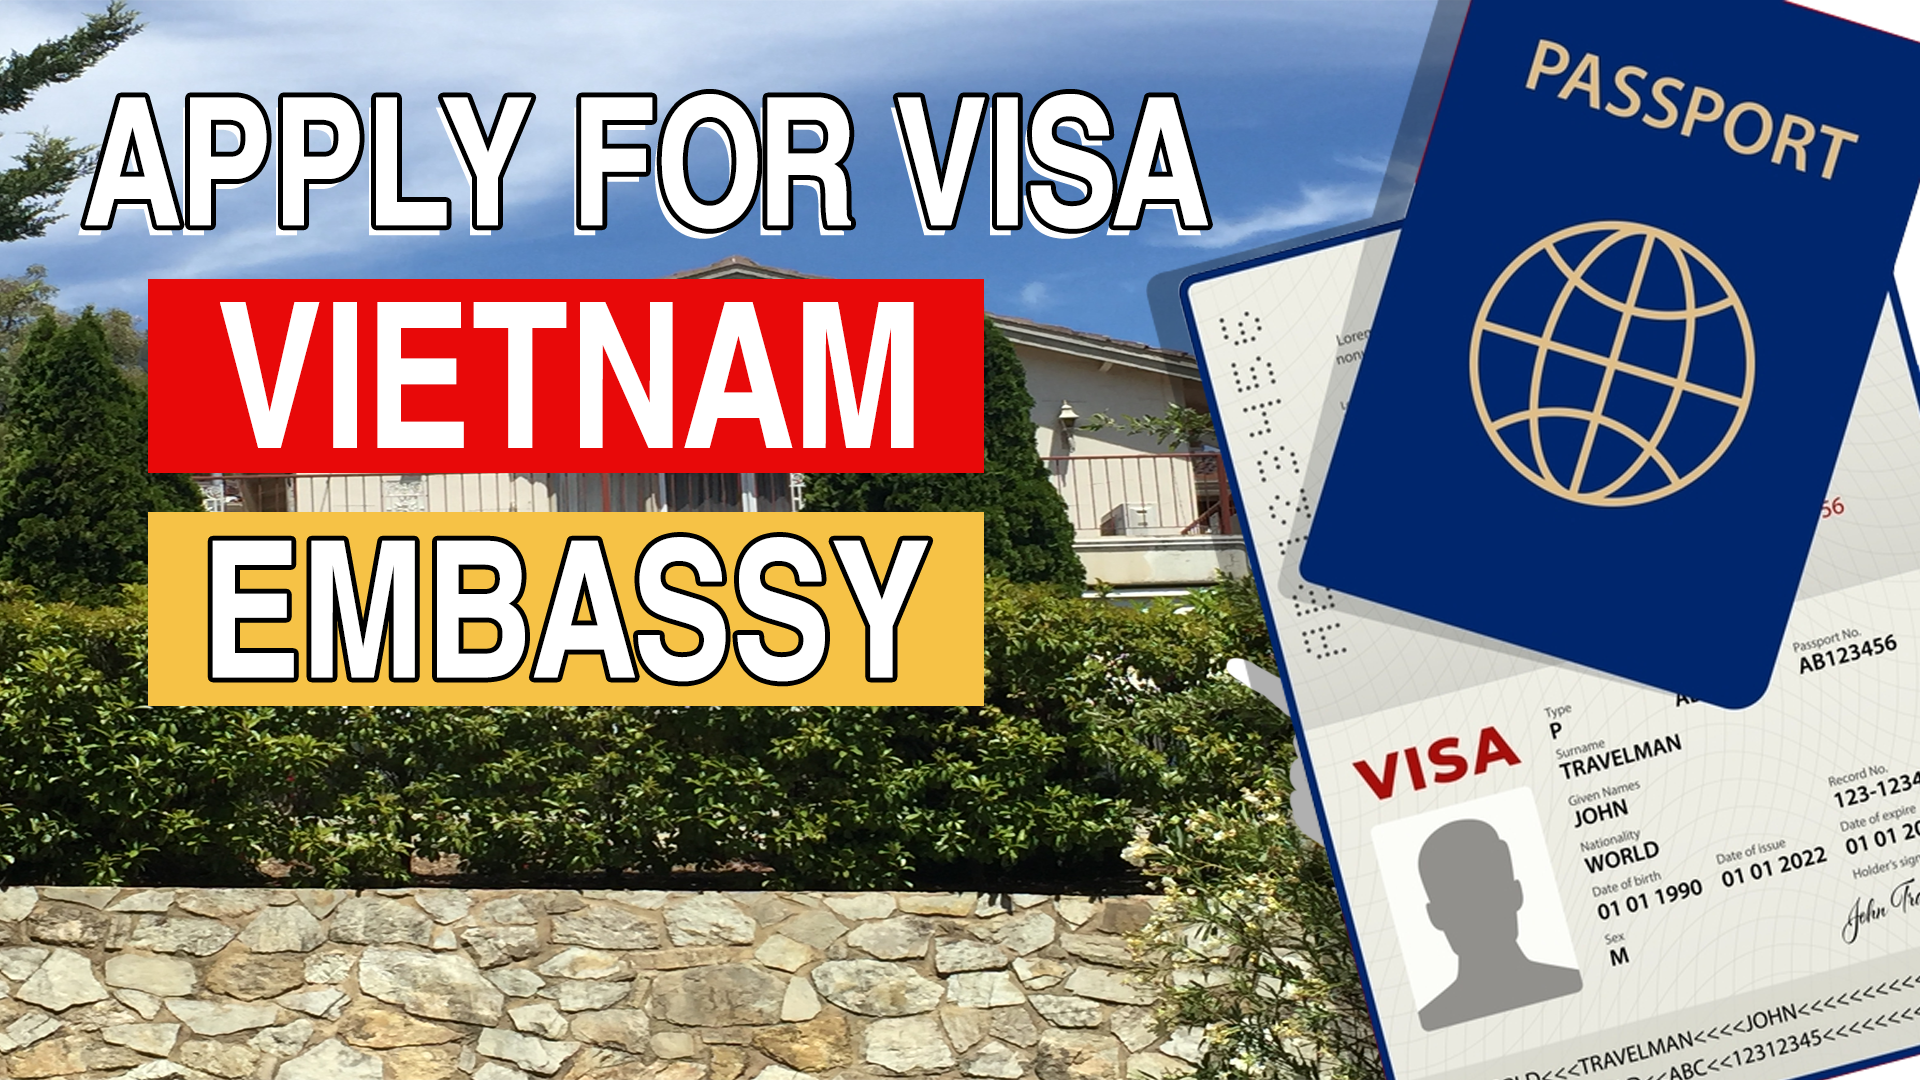 Apply for Visa at Vietnam Embassy